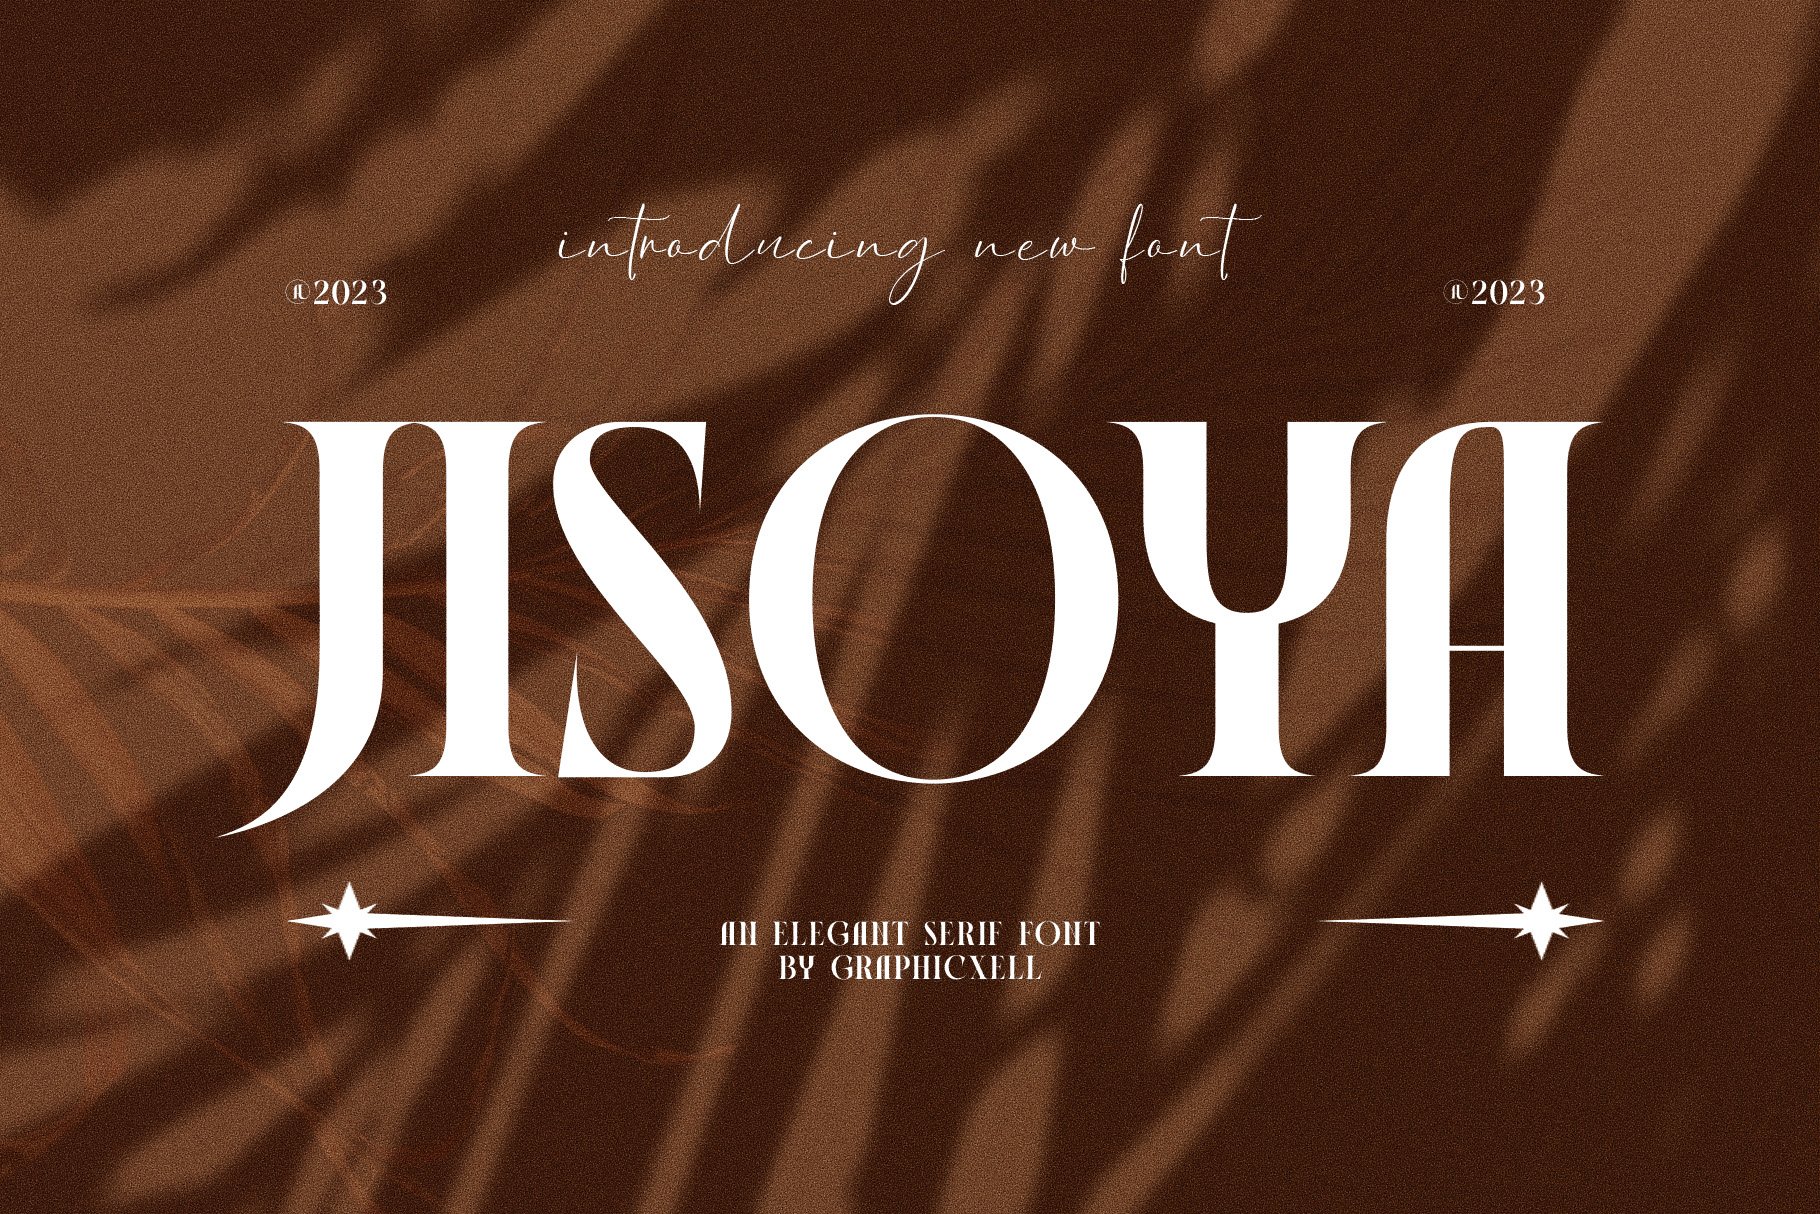 Jisoya Elegant Serif Font - Design Cuts